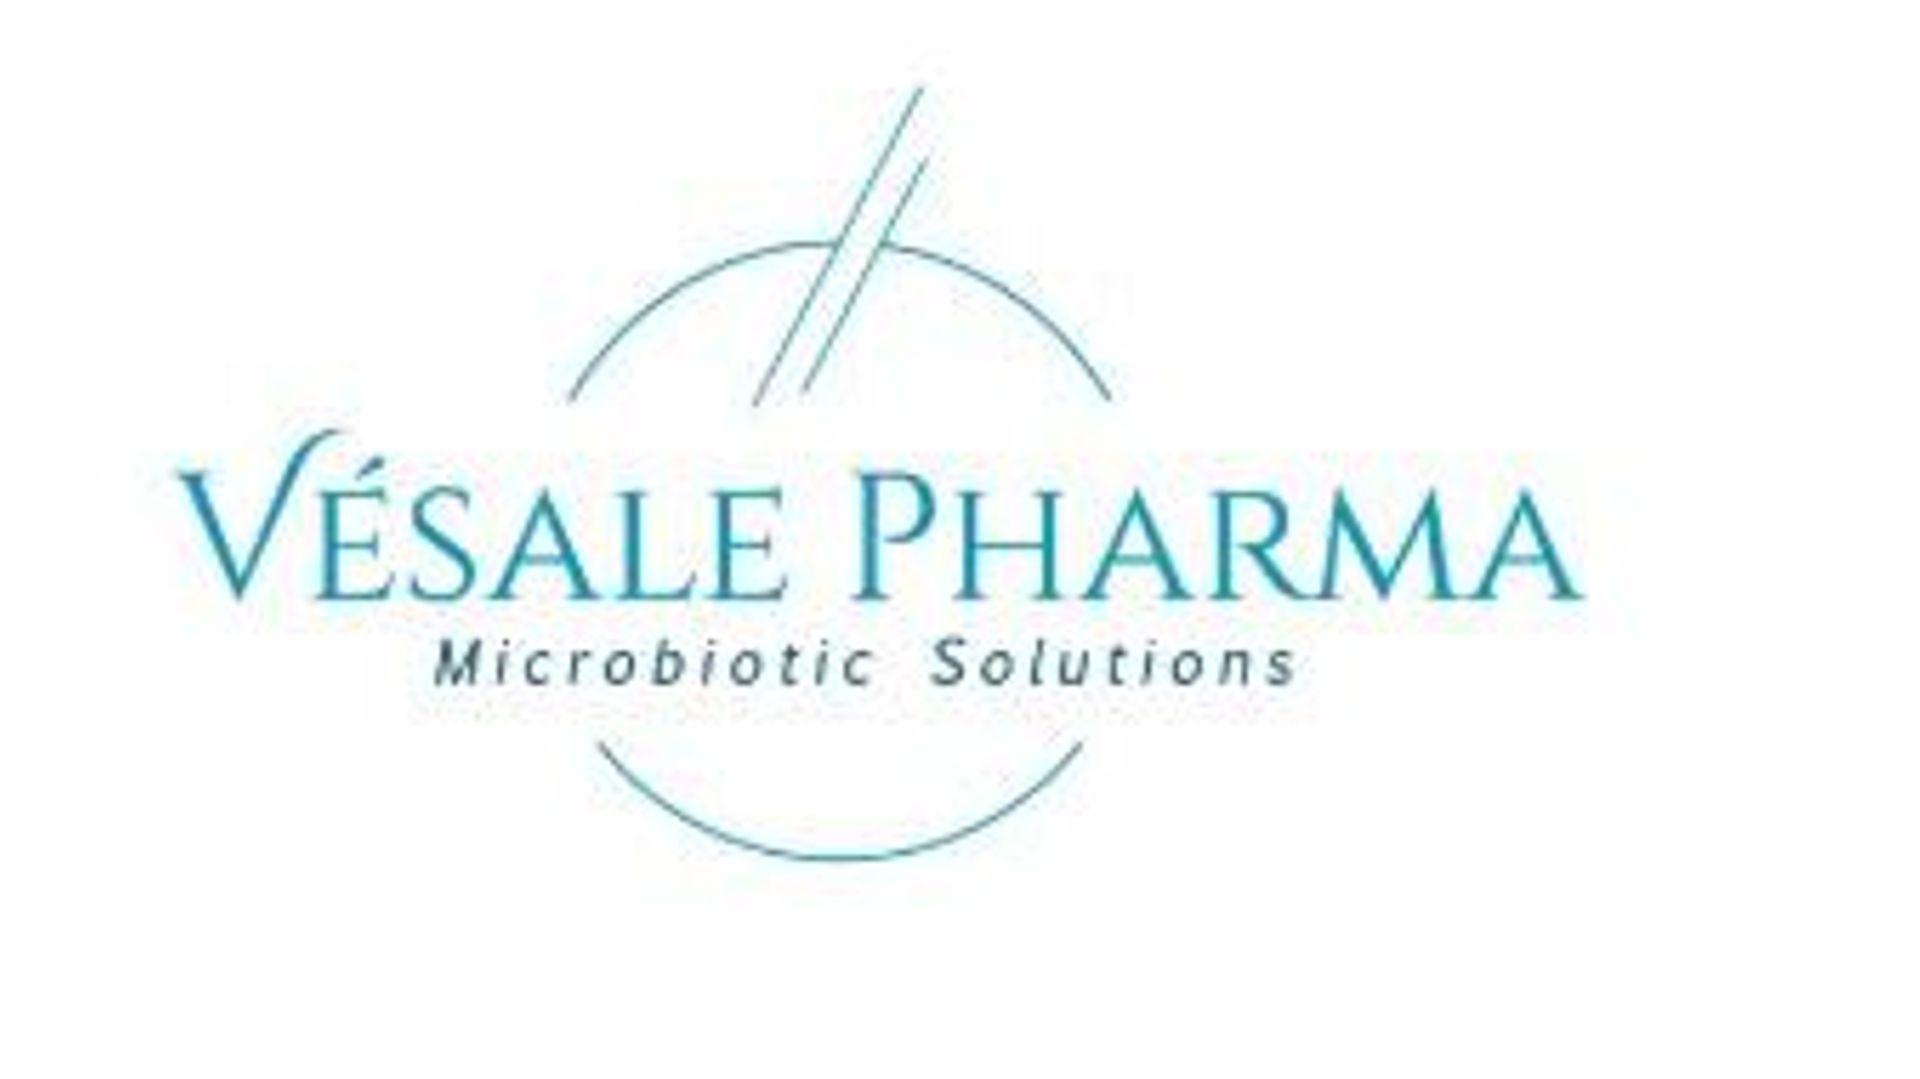 La société pharmaceutique Vésale Pharma est spécialisée dans les traitements à base de probiotique.